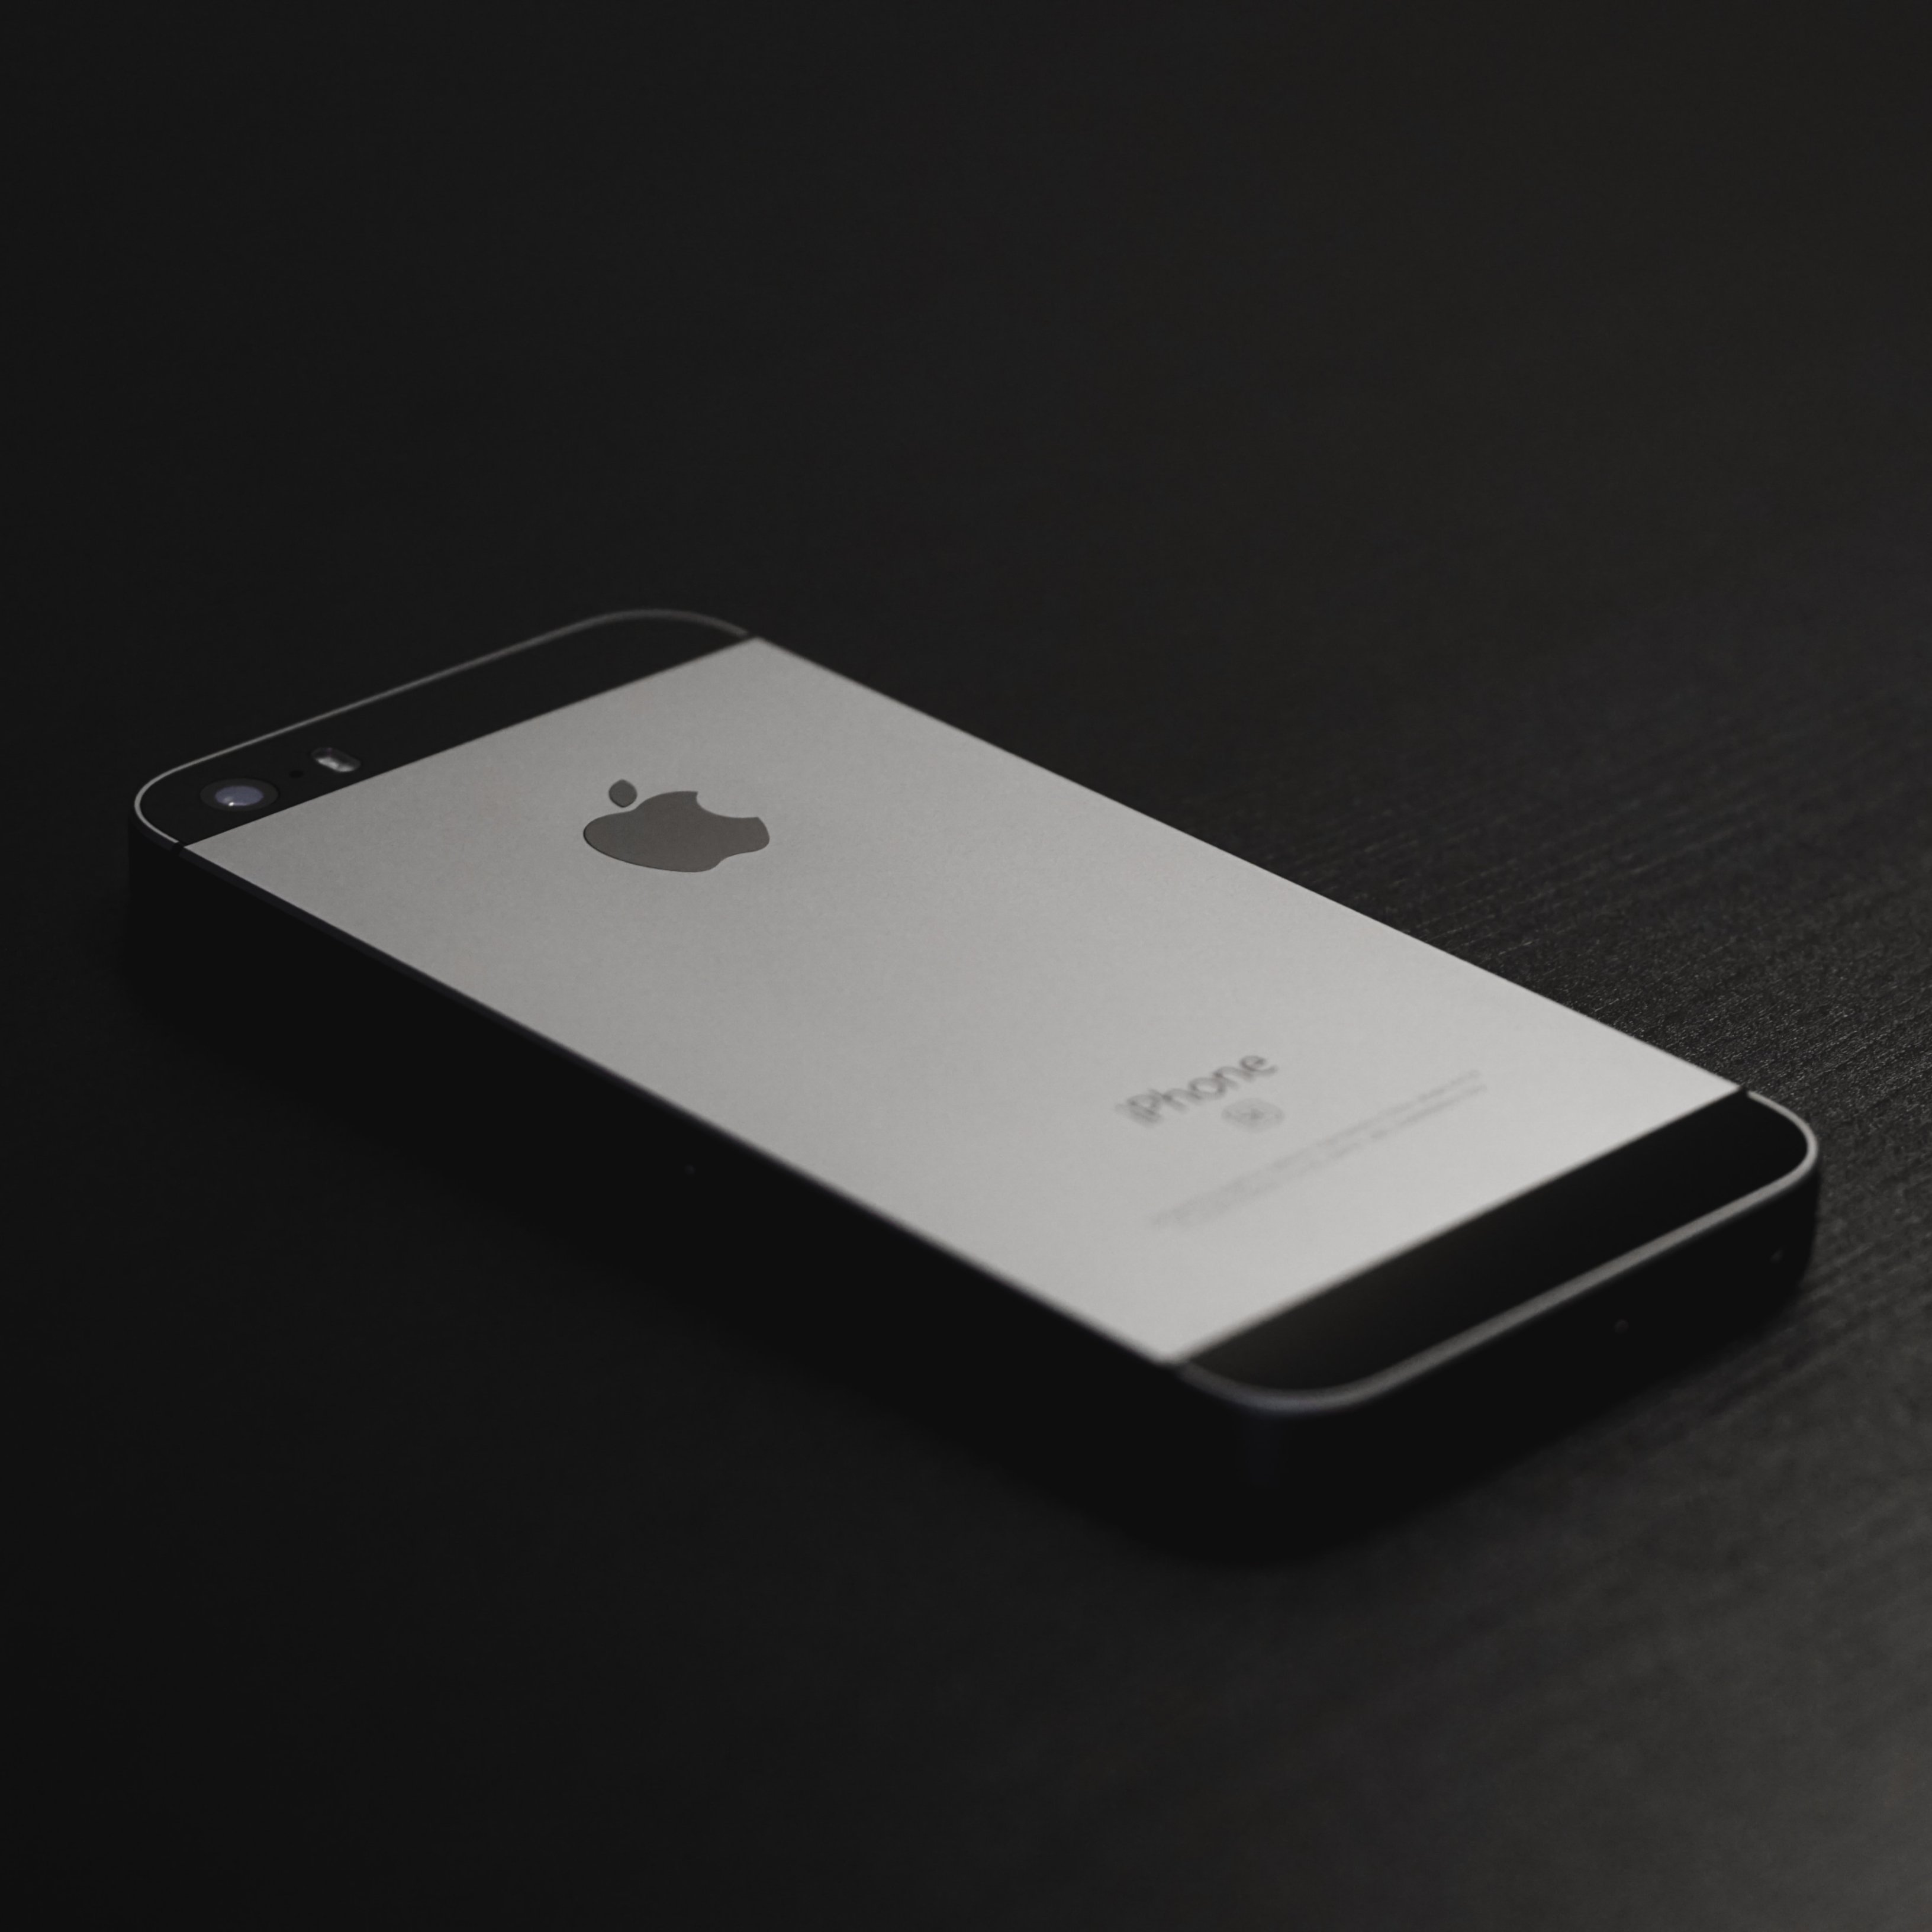 Si tens aquest iPhone, Apple t'urgeix a actualitzar com més aviat millor el sistema operatiu